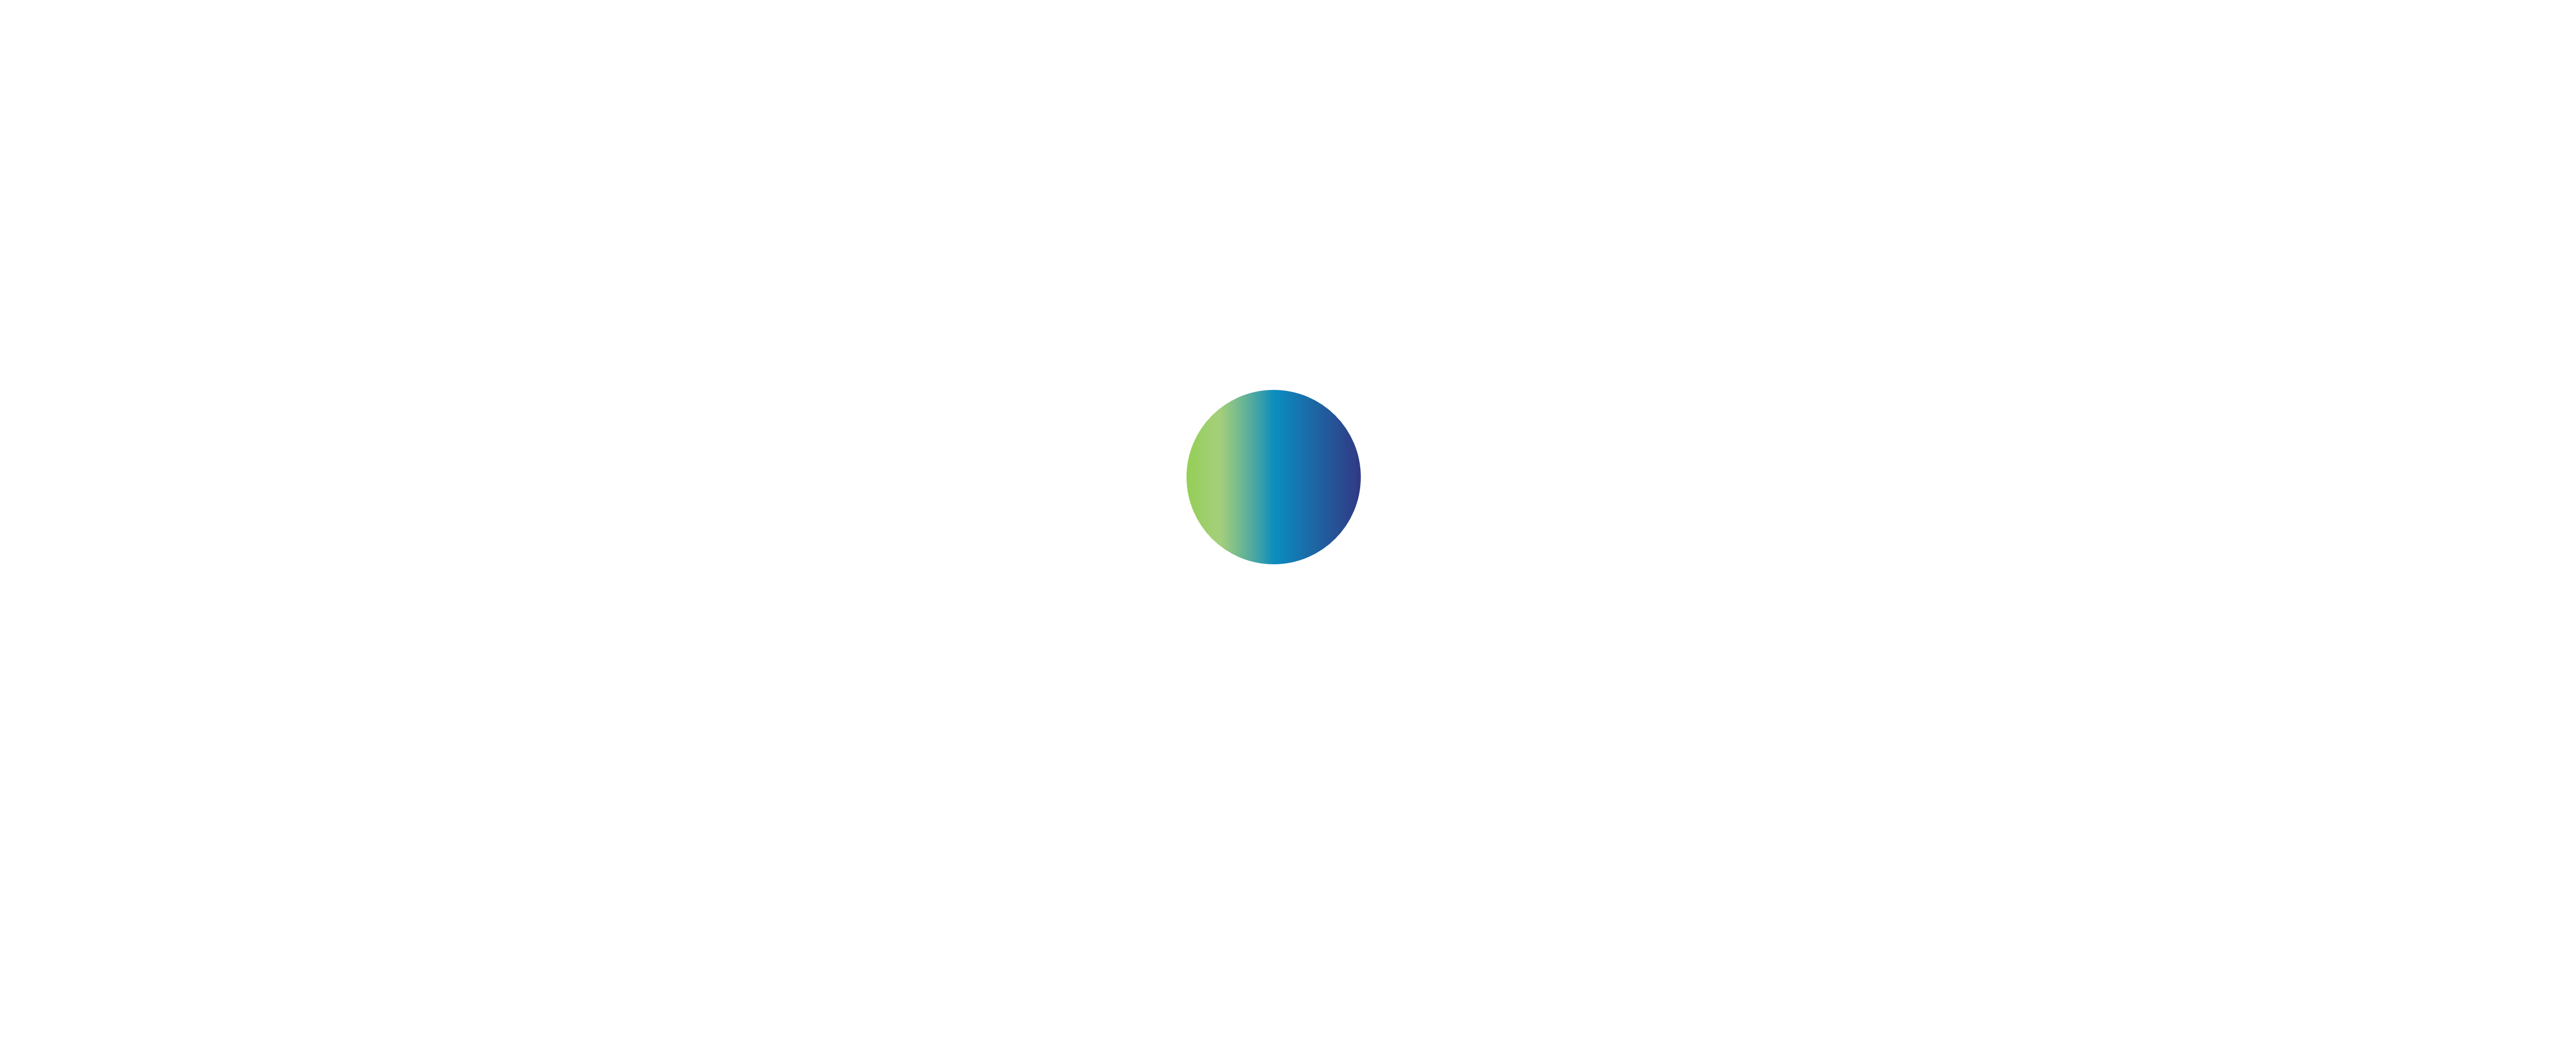 Pivot 2023: Building Bridges logo